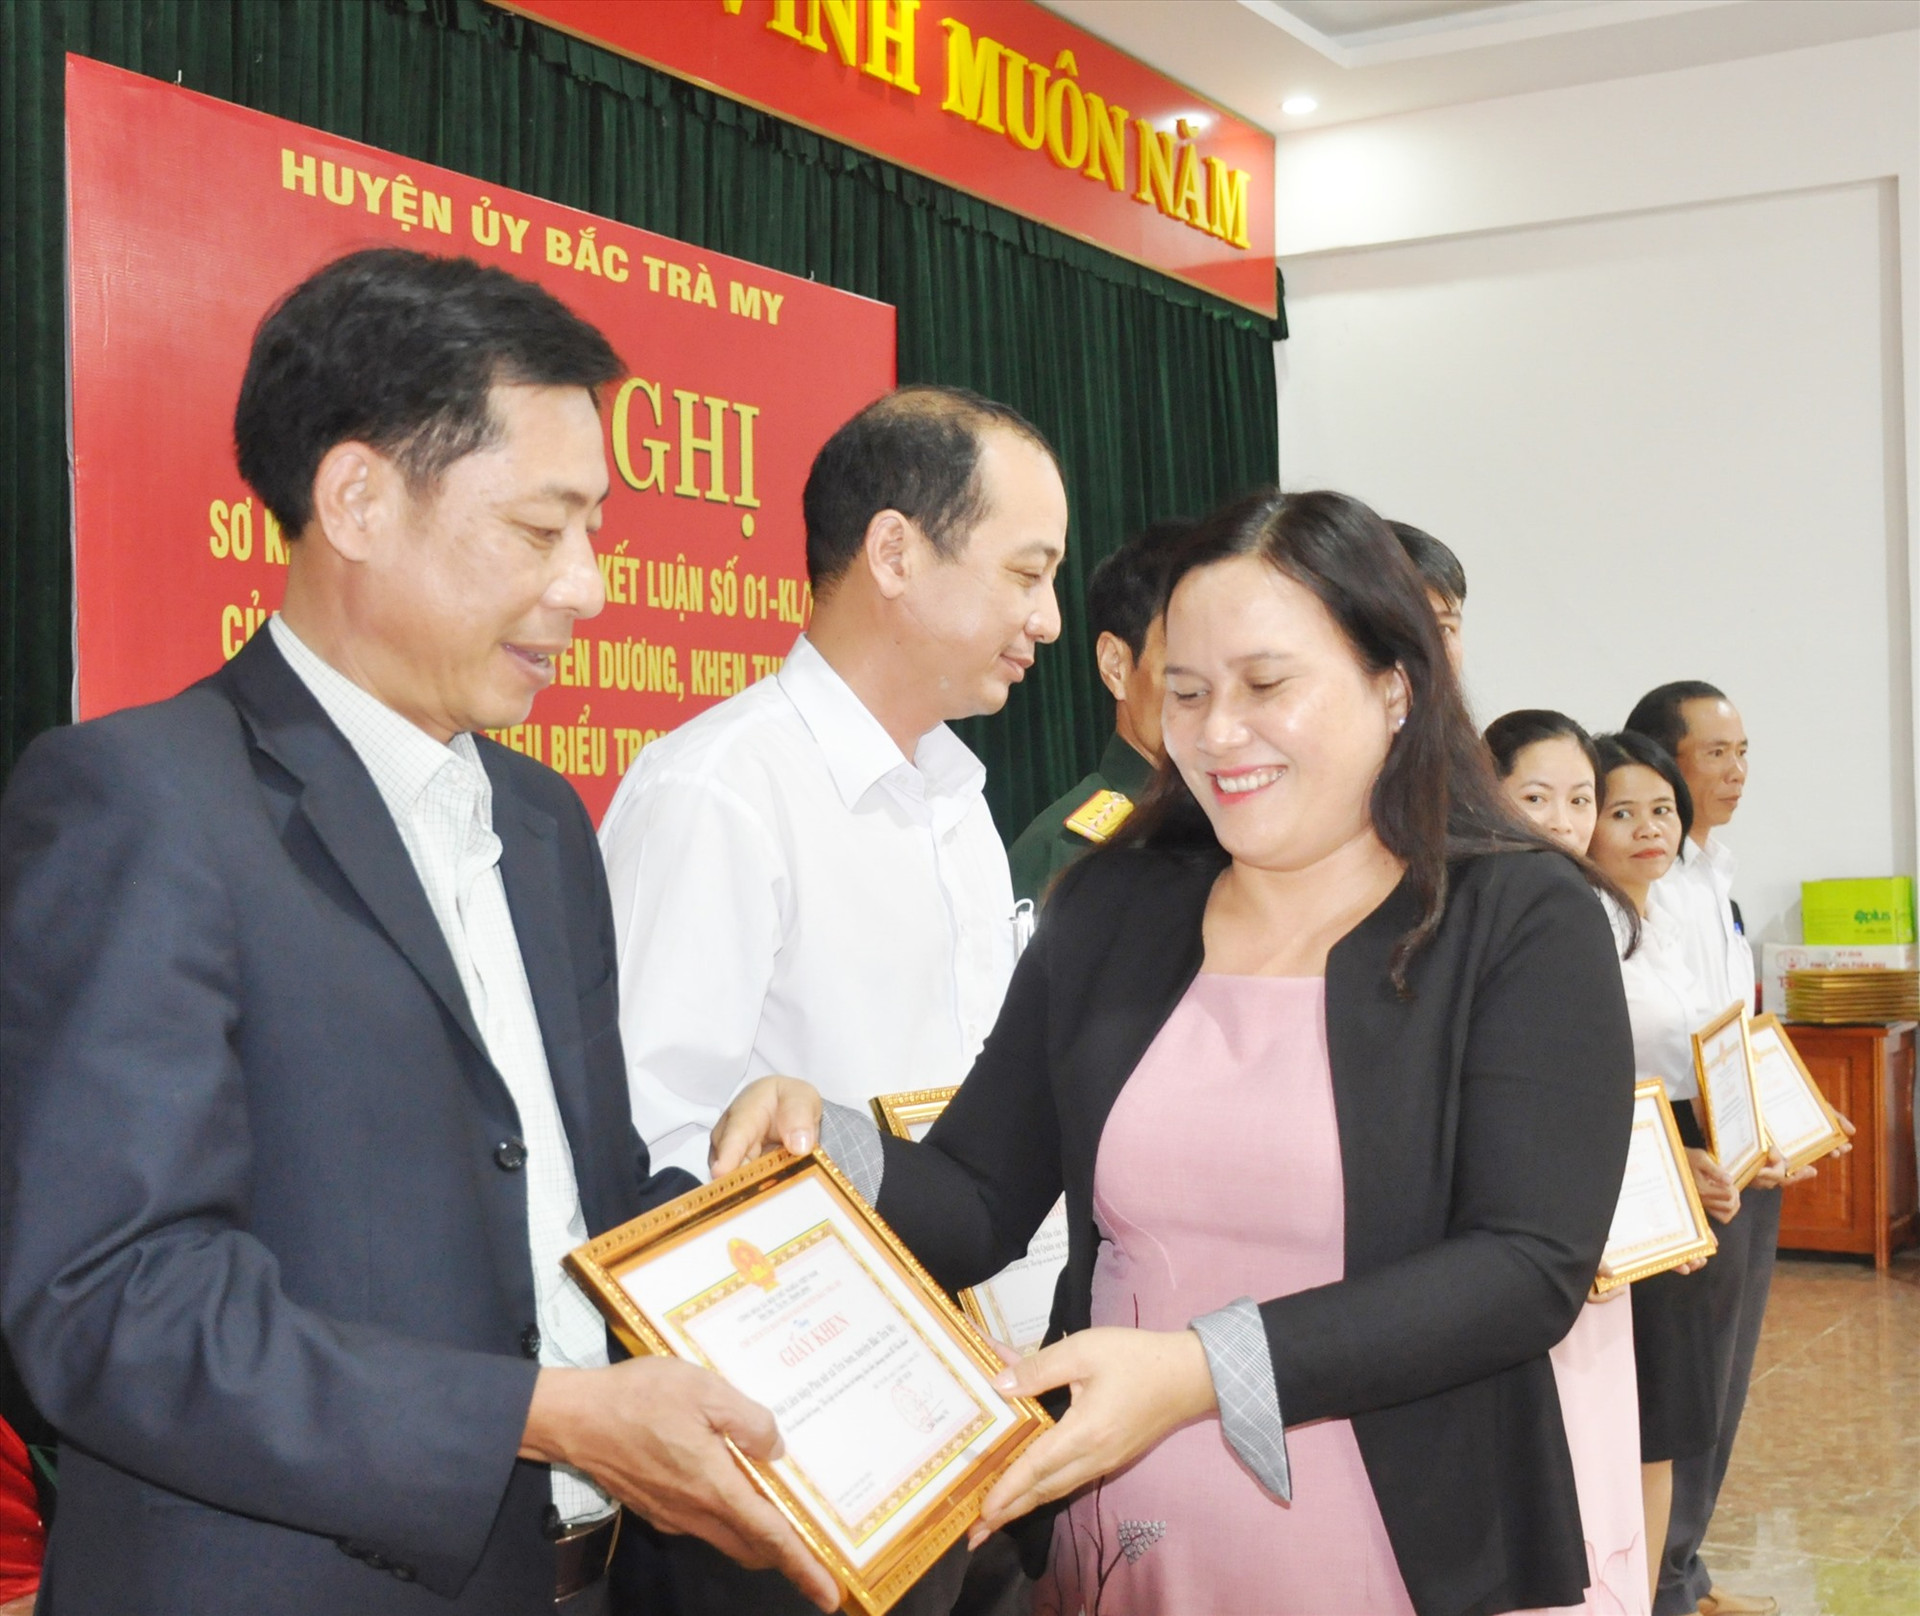 Bí thư Huyện ủy Bắc Trà My Nguyễn Thị Tuyết Thanh tặng giấy khen của UBND huyện cho các tập thể tiêu biểu thực hiện Chỉ thị 05. Ảnh: N.Đ